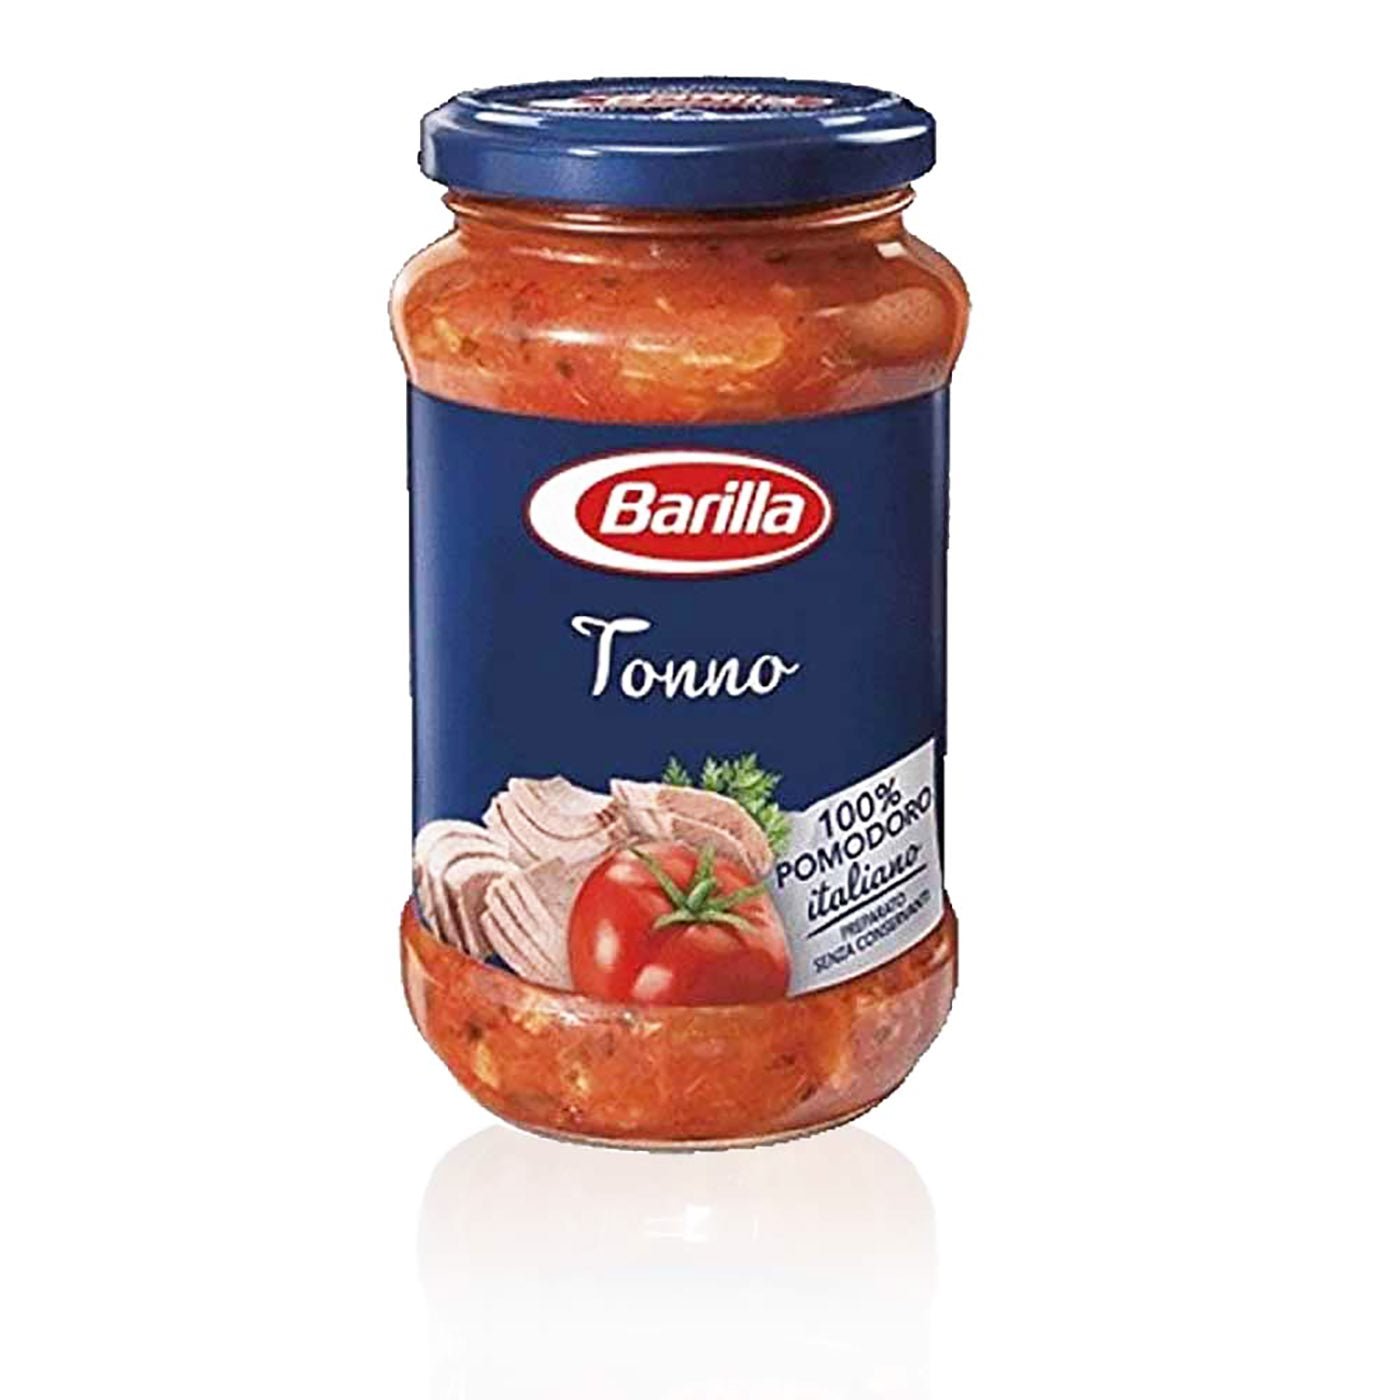 BARILLA Sugo al tonno - Thunfisch - Tomaten - Sauce - 0,4kg - italienisch - einkaufen.de